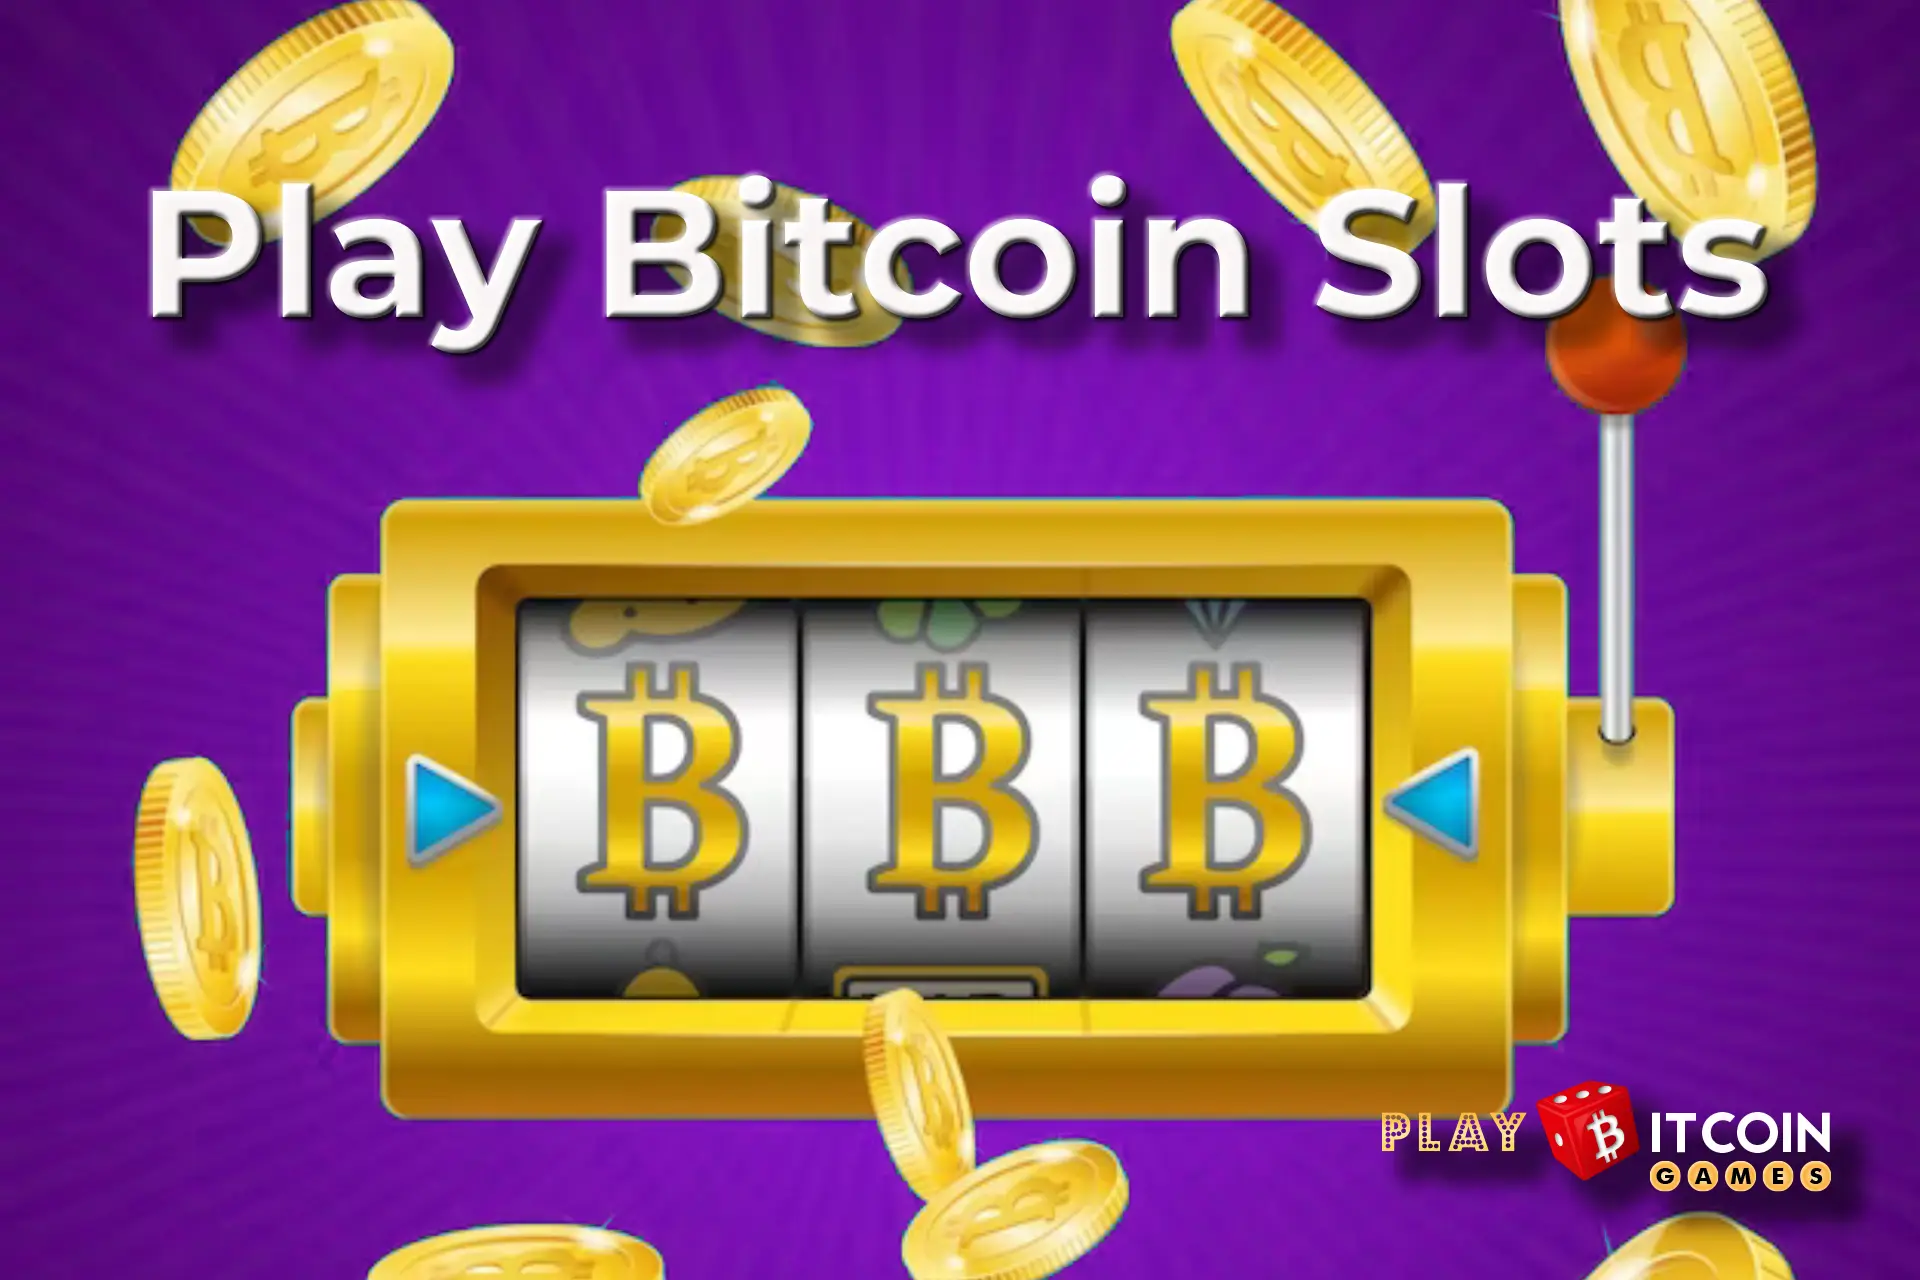 play bitcoin slots - playbitcoingames.com